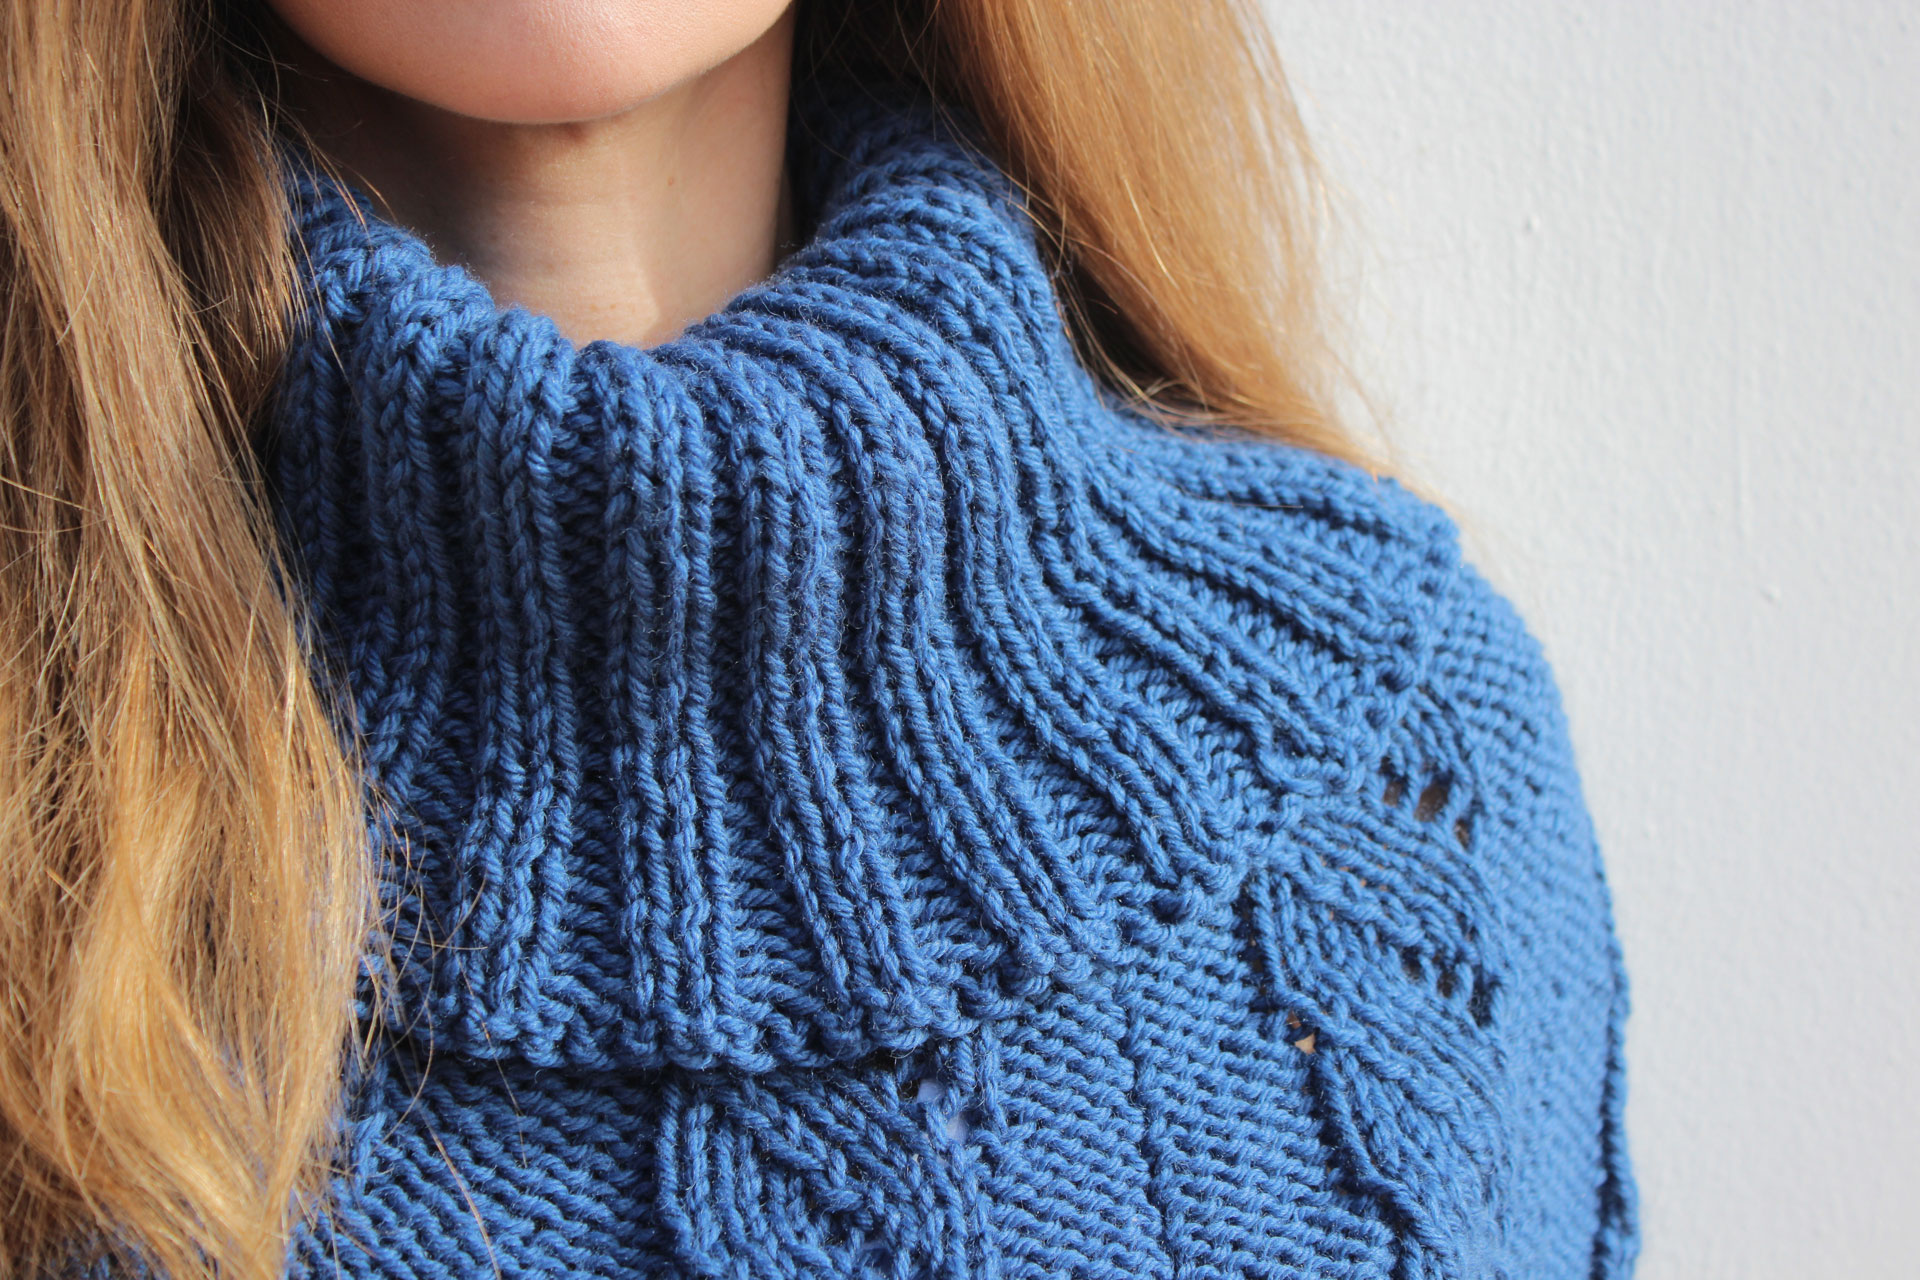 "Knitting & Crochet" nueva marca Valenciana con mucho gancho. De agujas y bonitos tejidos de alta calidad, va el tema.